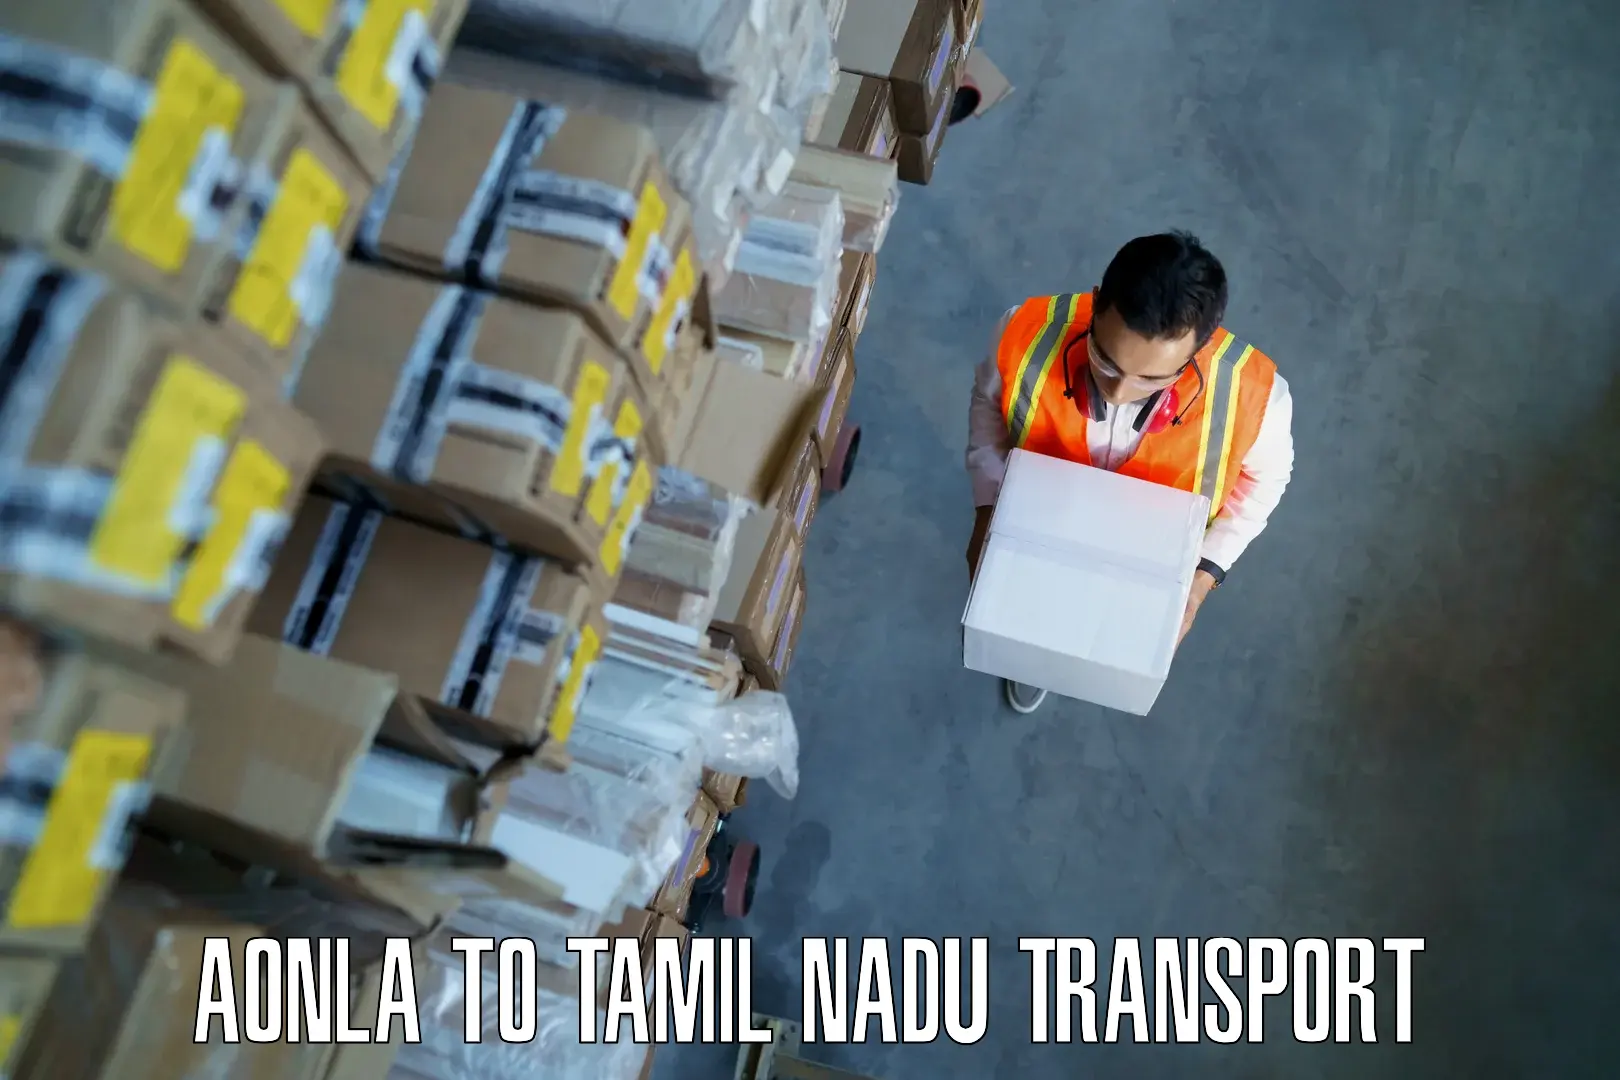 Shipping services in Aonla to Tirupur